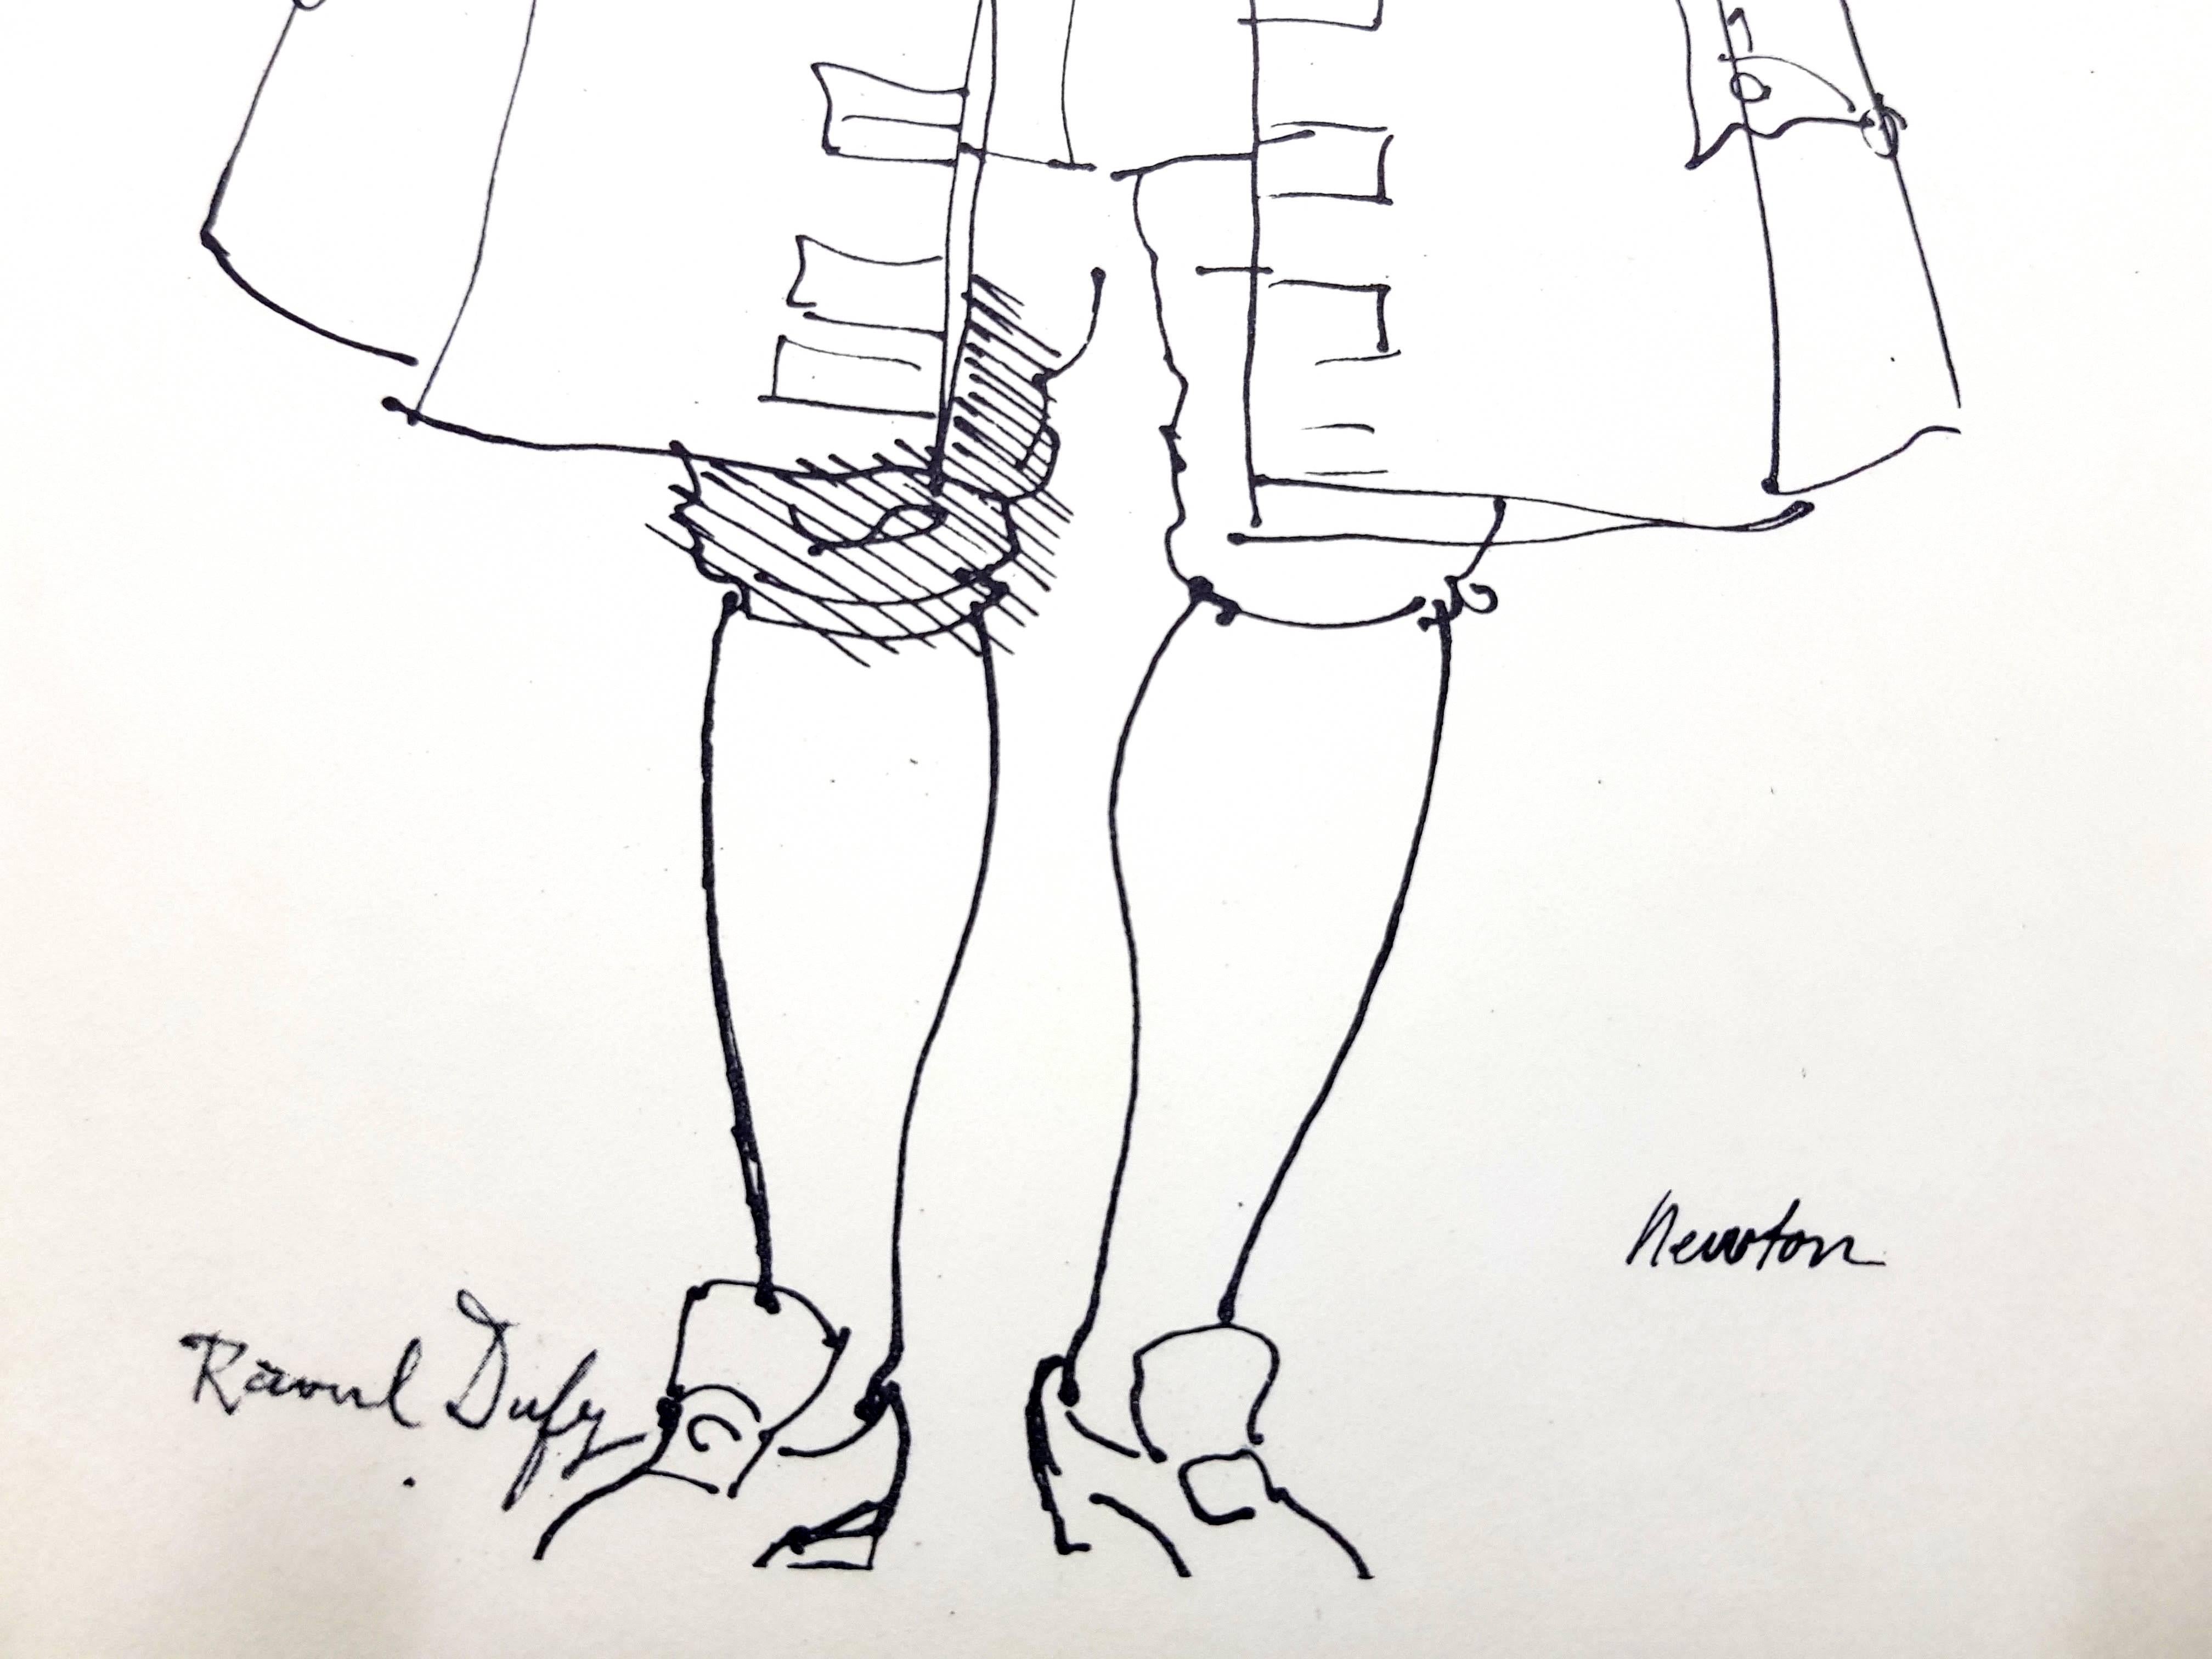 Raoul Dufy (d'après)  Lithographie - Print de (after) Raoul Dufy